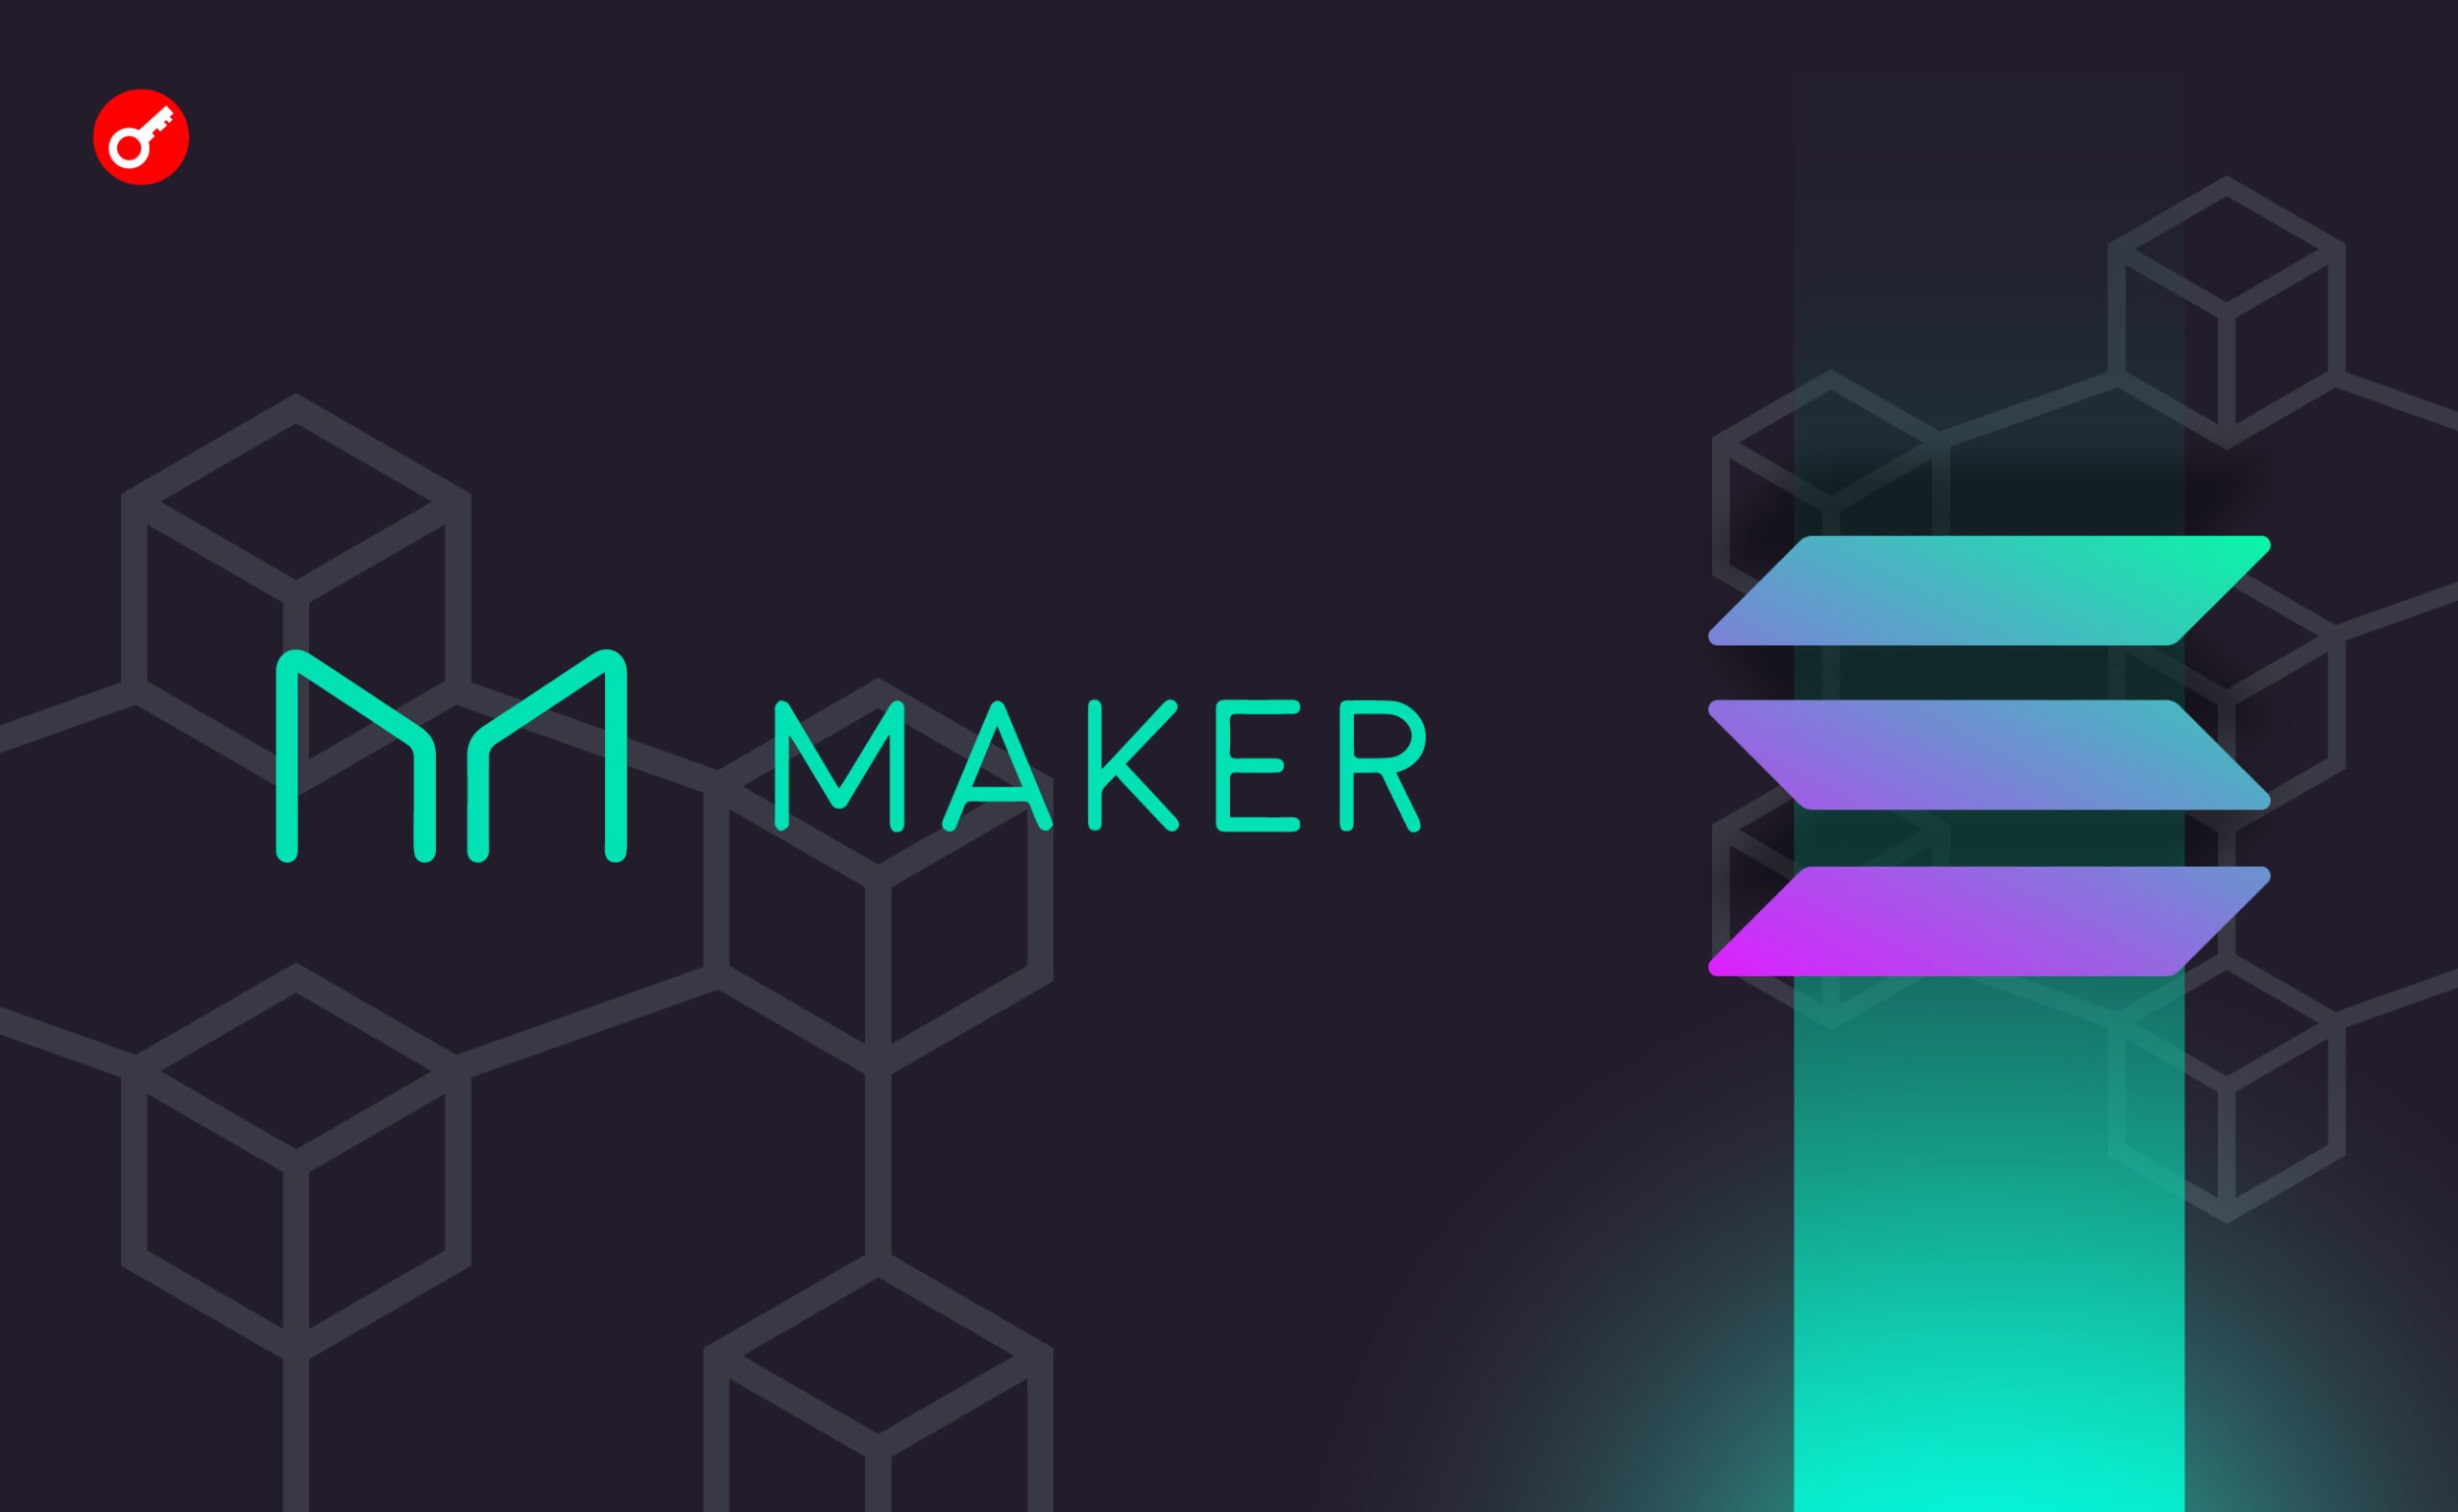 MakerDAO zaproponowało utworzenie blockchaina na kodzie Solana. Główny kolaż wiadomości.